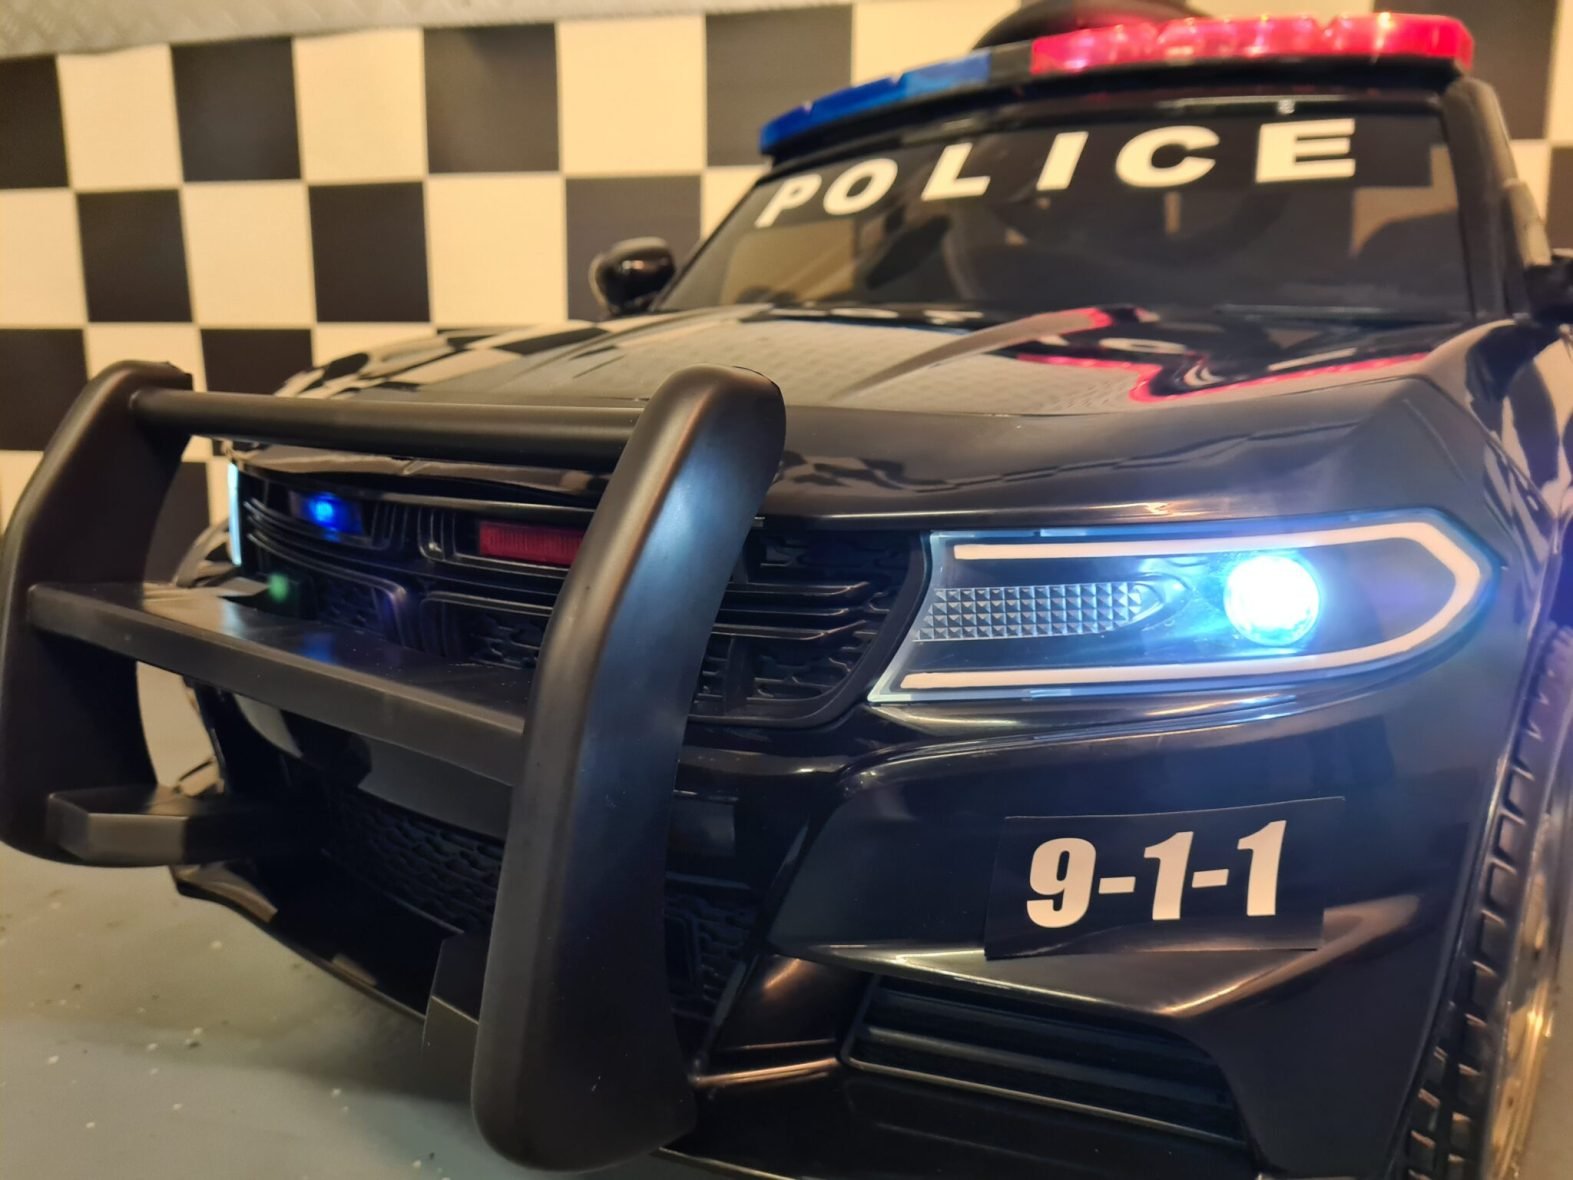 Politie-elektrische-speelgoedauto